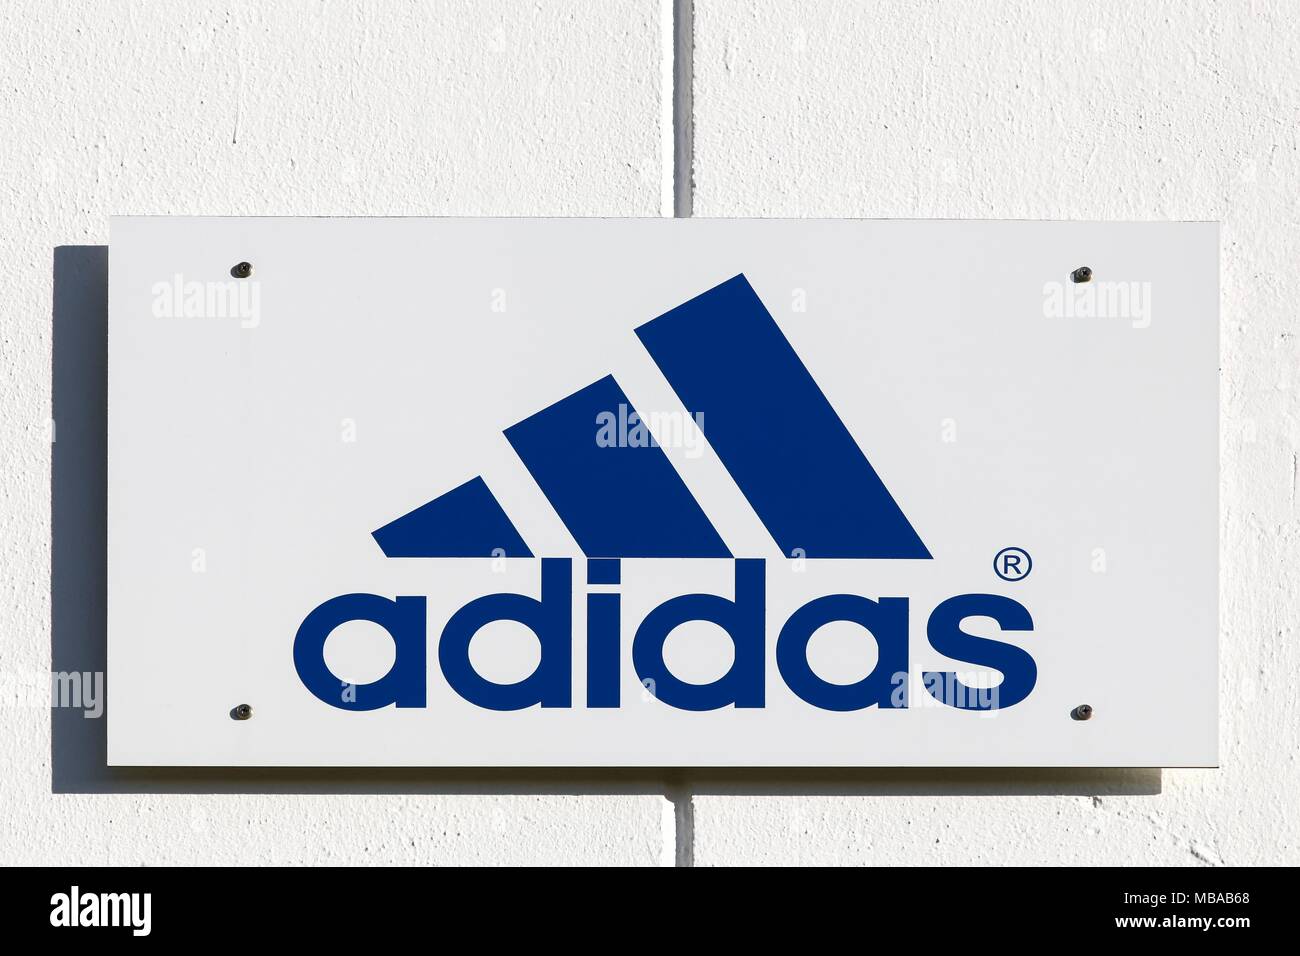 new adidas logo 2017, Off 73%, www.scrimaglio.com